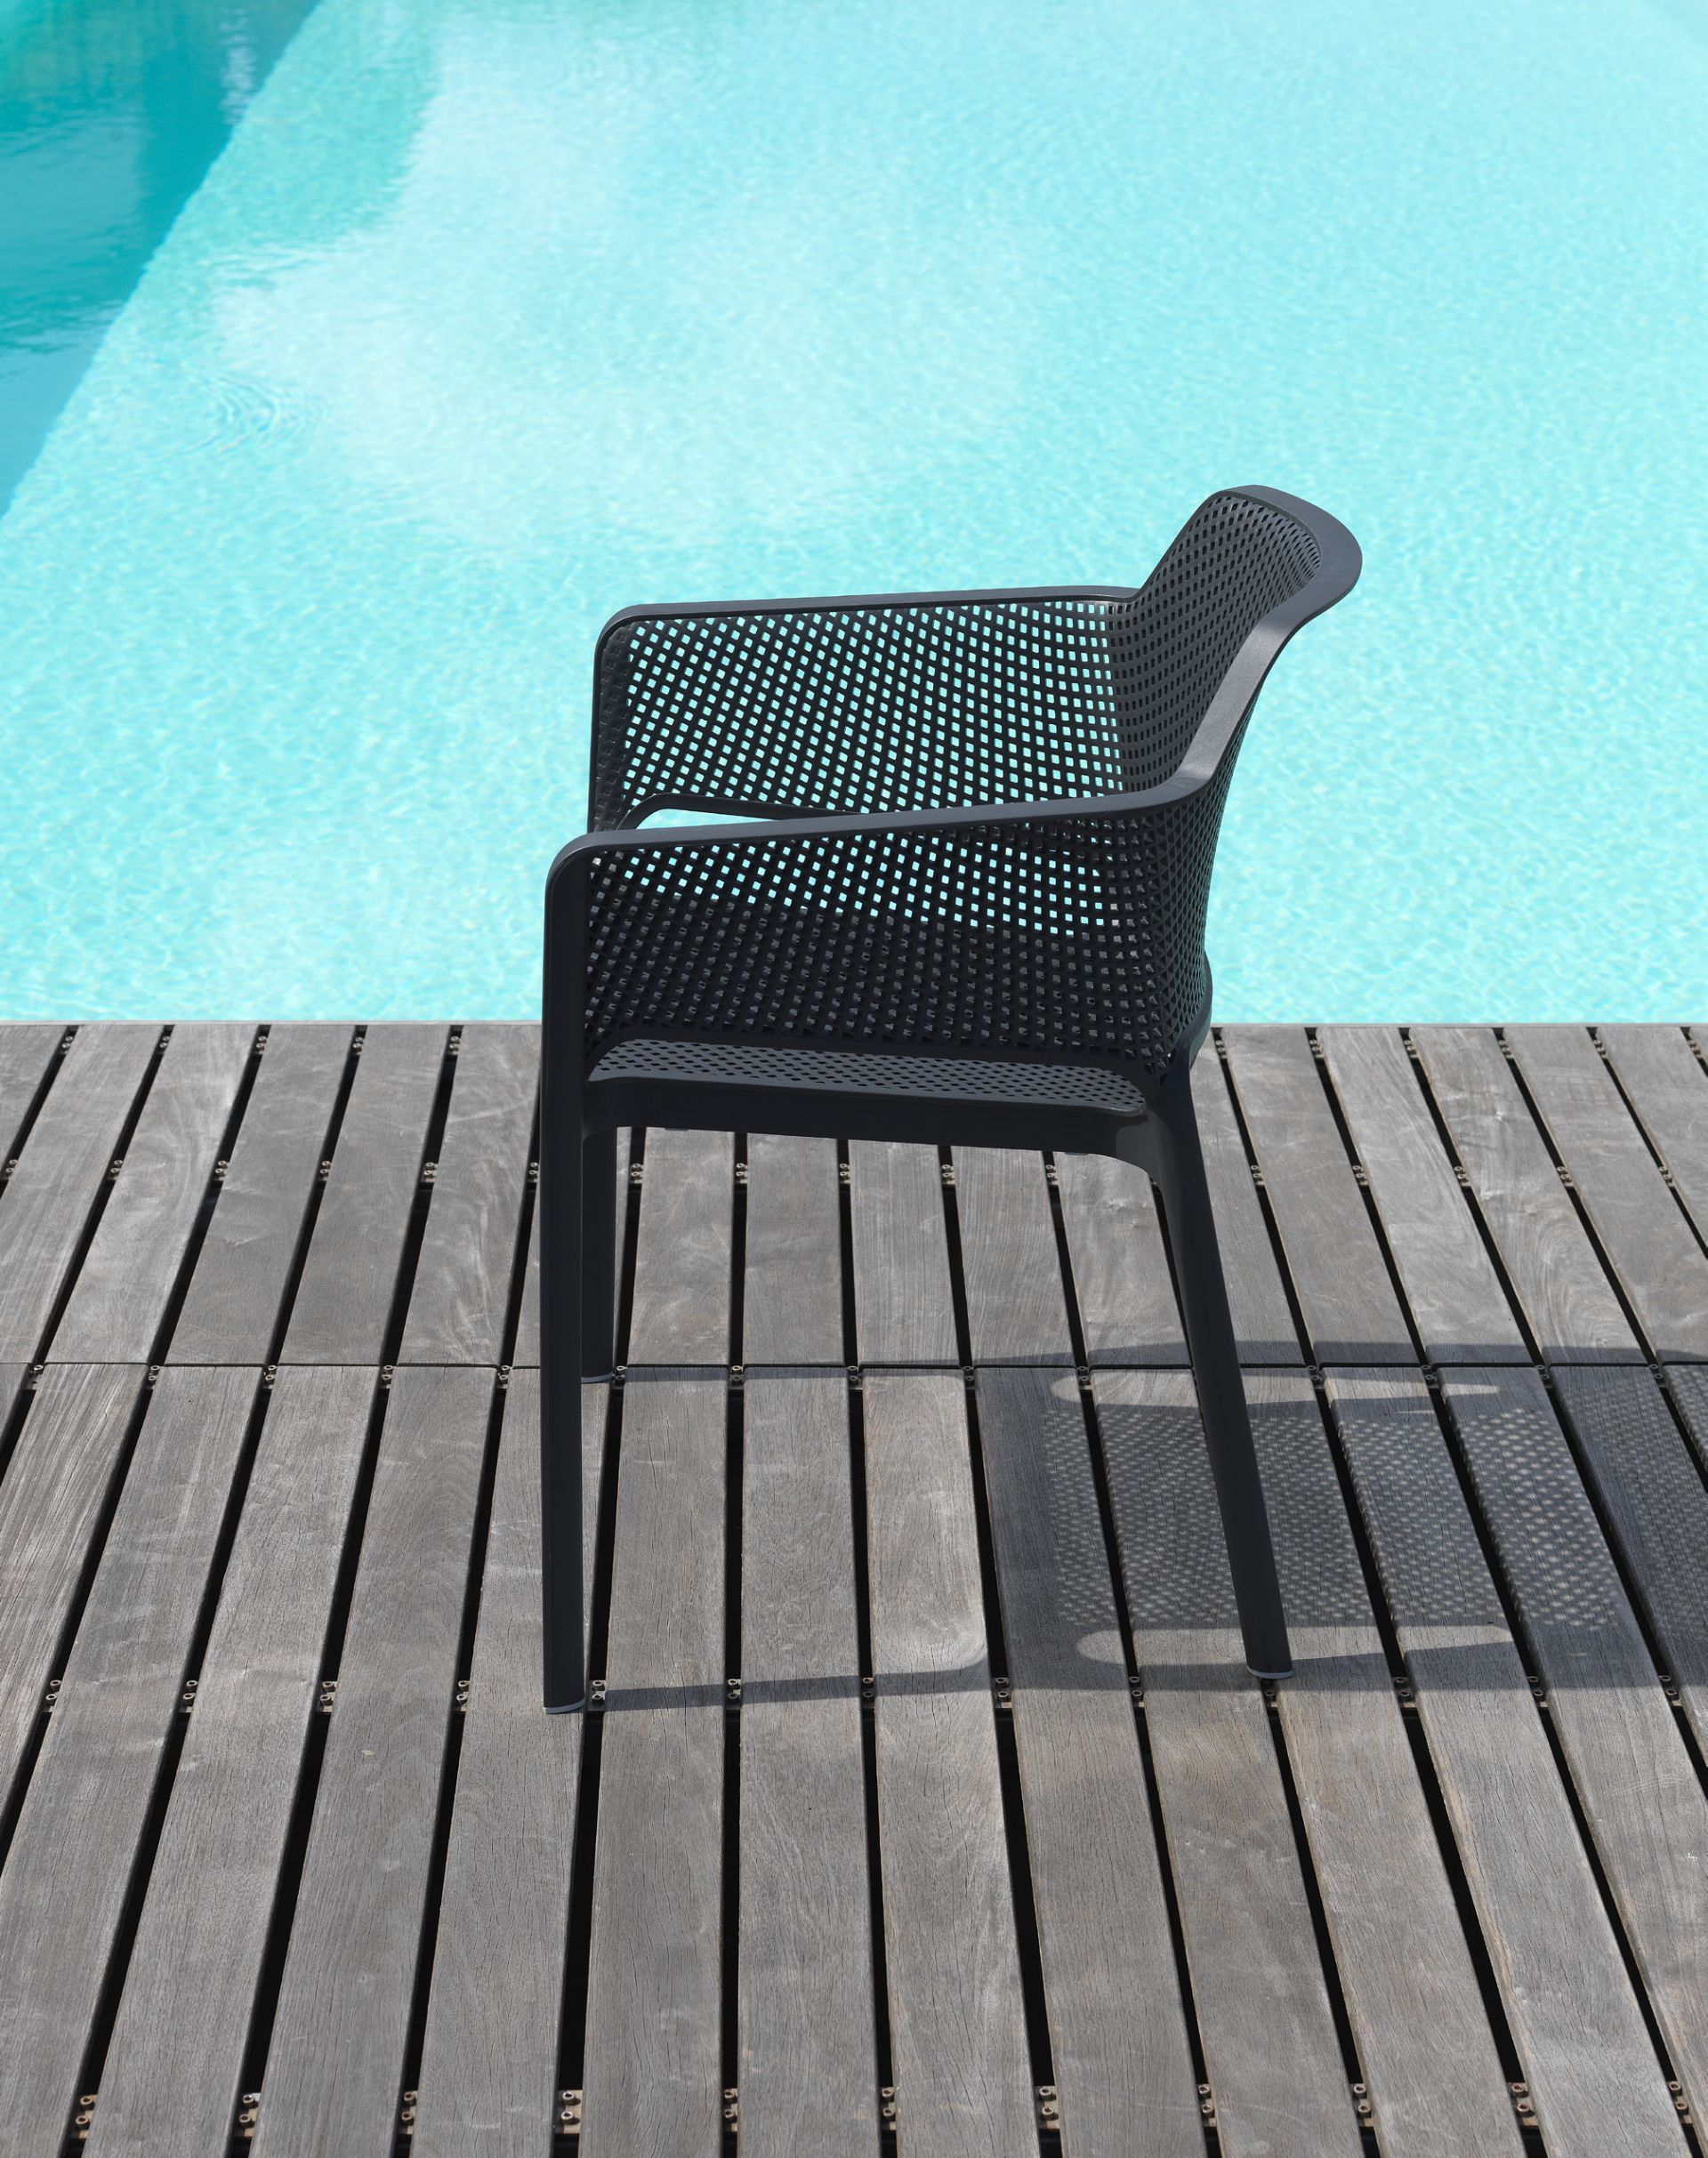 Der Net Armlehnstuhl von Nardi vereint modernes Design mit langlebigen Materialien und hoher Funktionalität